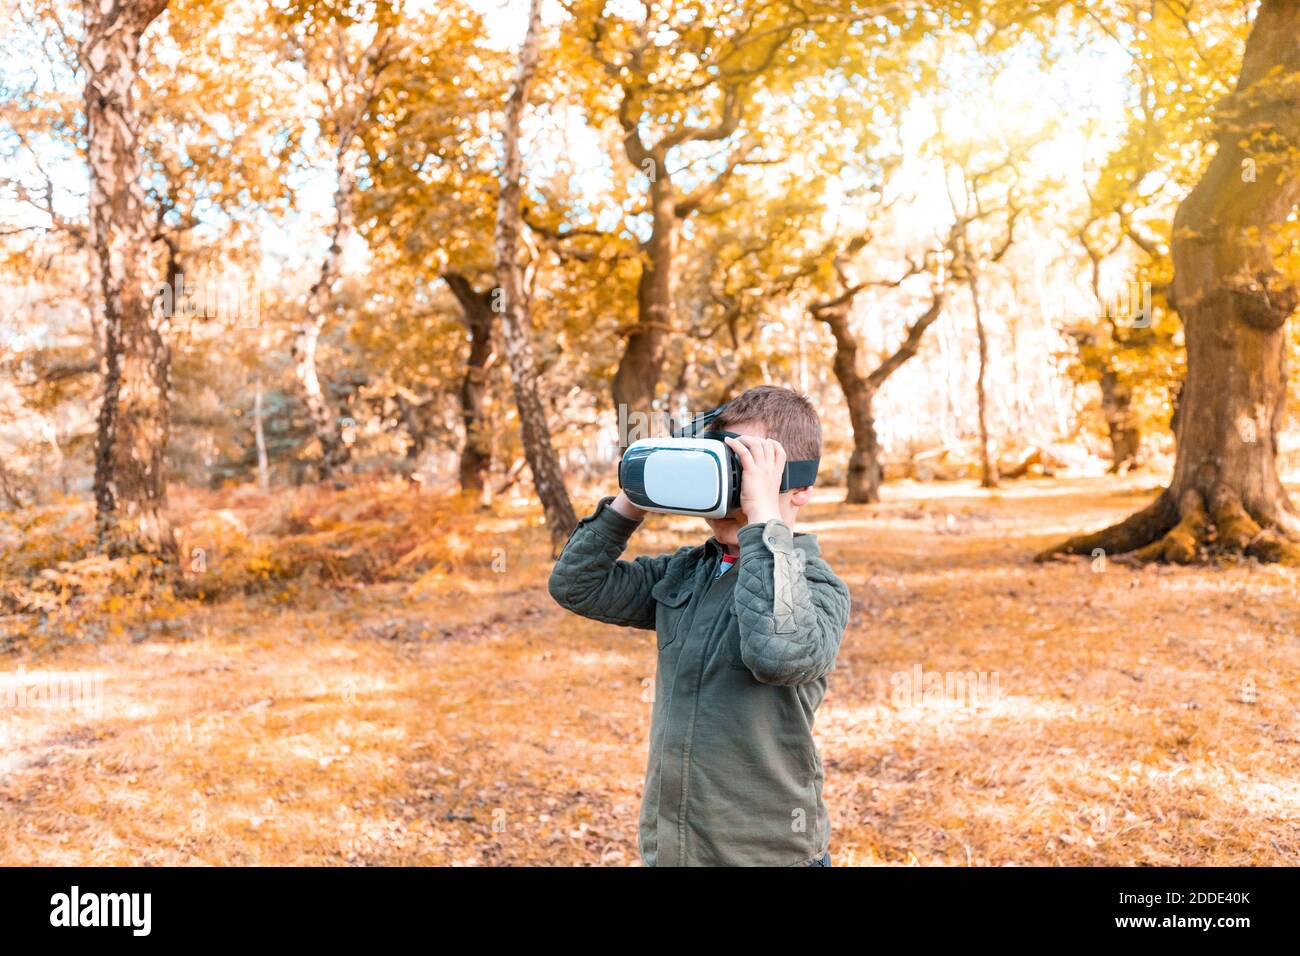 Garçon portant un simulateur virtuel en se tenant dans le parc pendant l'automne Banque D'Images